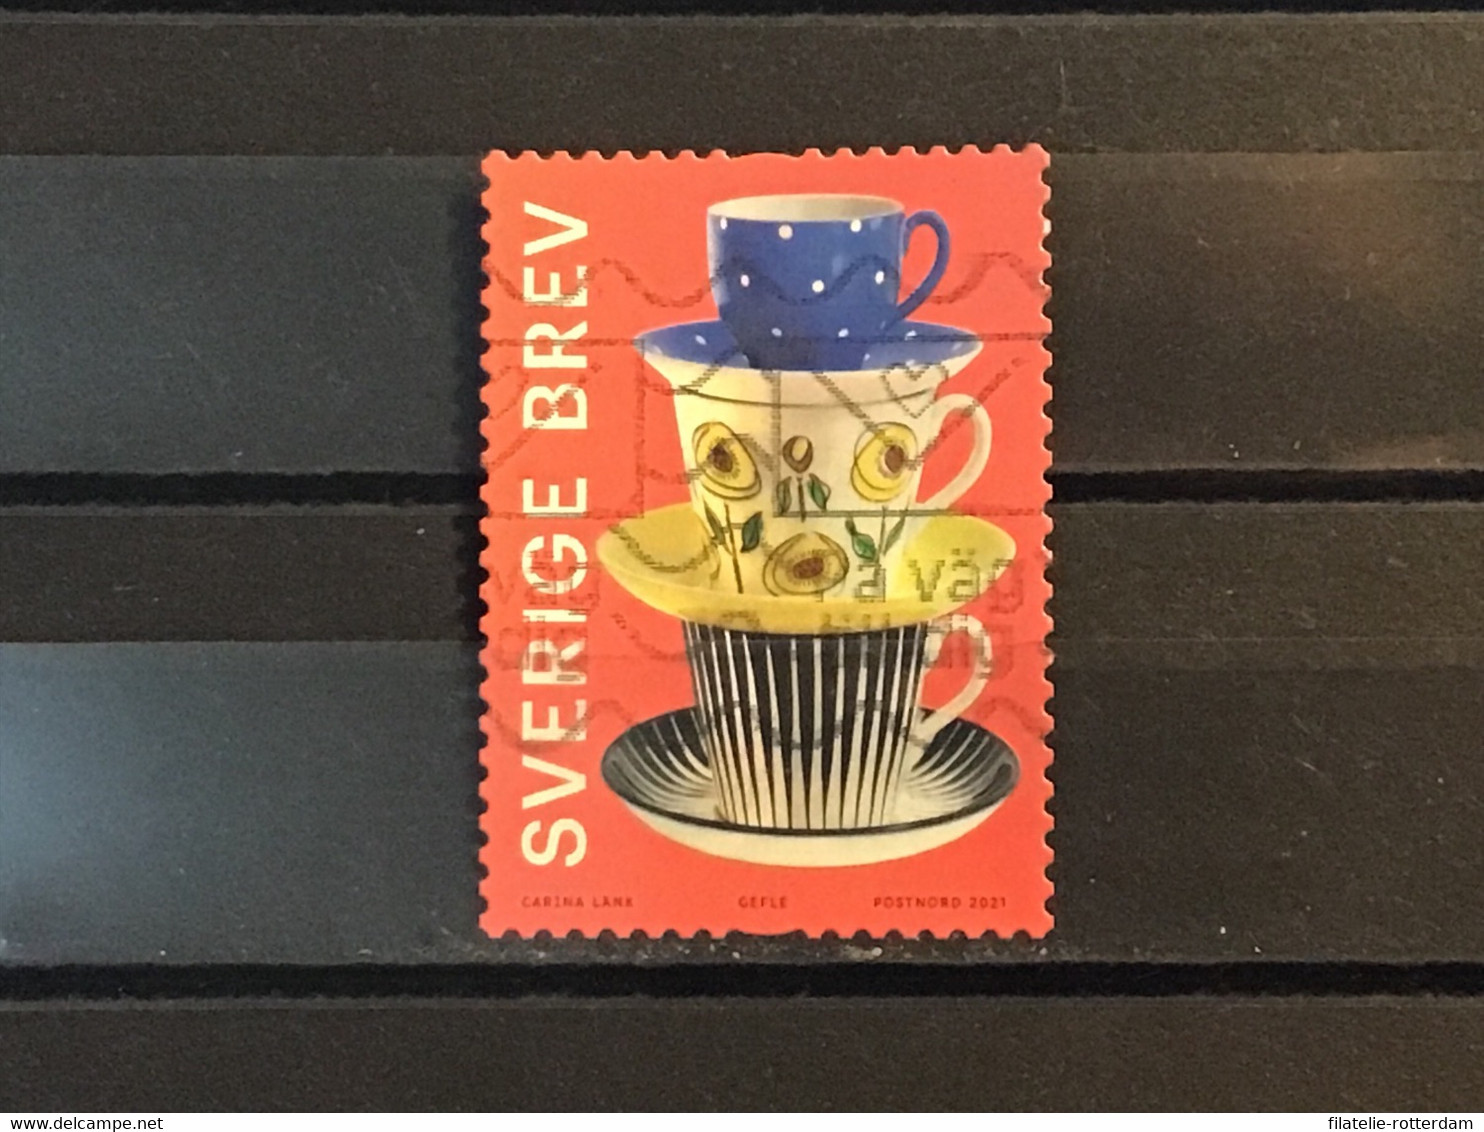 Zweden / Sweden - Zweeds Porselein 2021 - Used Stamps